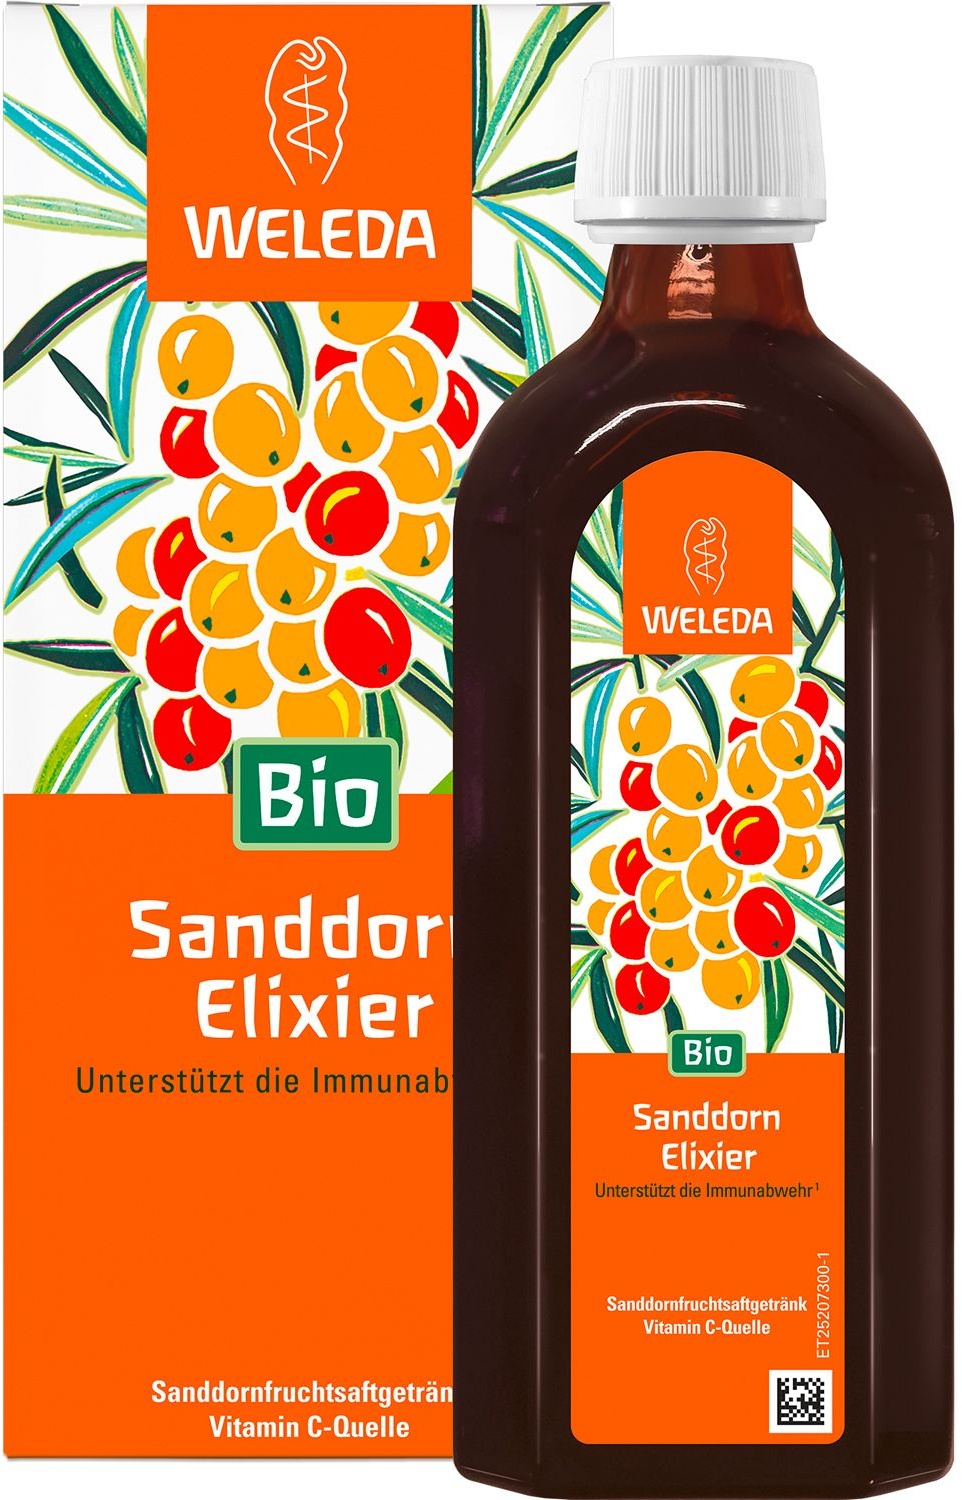 Weleda Sanddorn-Elixier Bio - unterstützt mit Vitamin C die Immunabwehr, hilft bei Müdigkeit Elixier 250 ml 250 ml Elixier